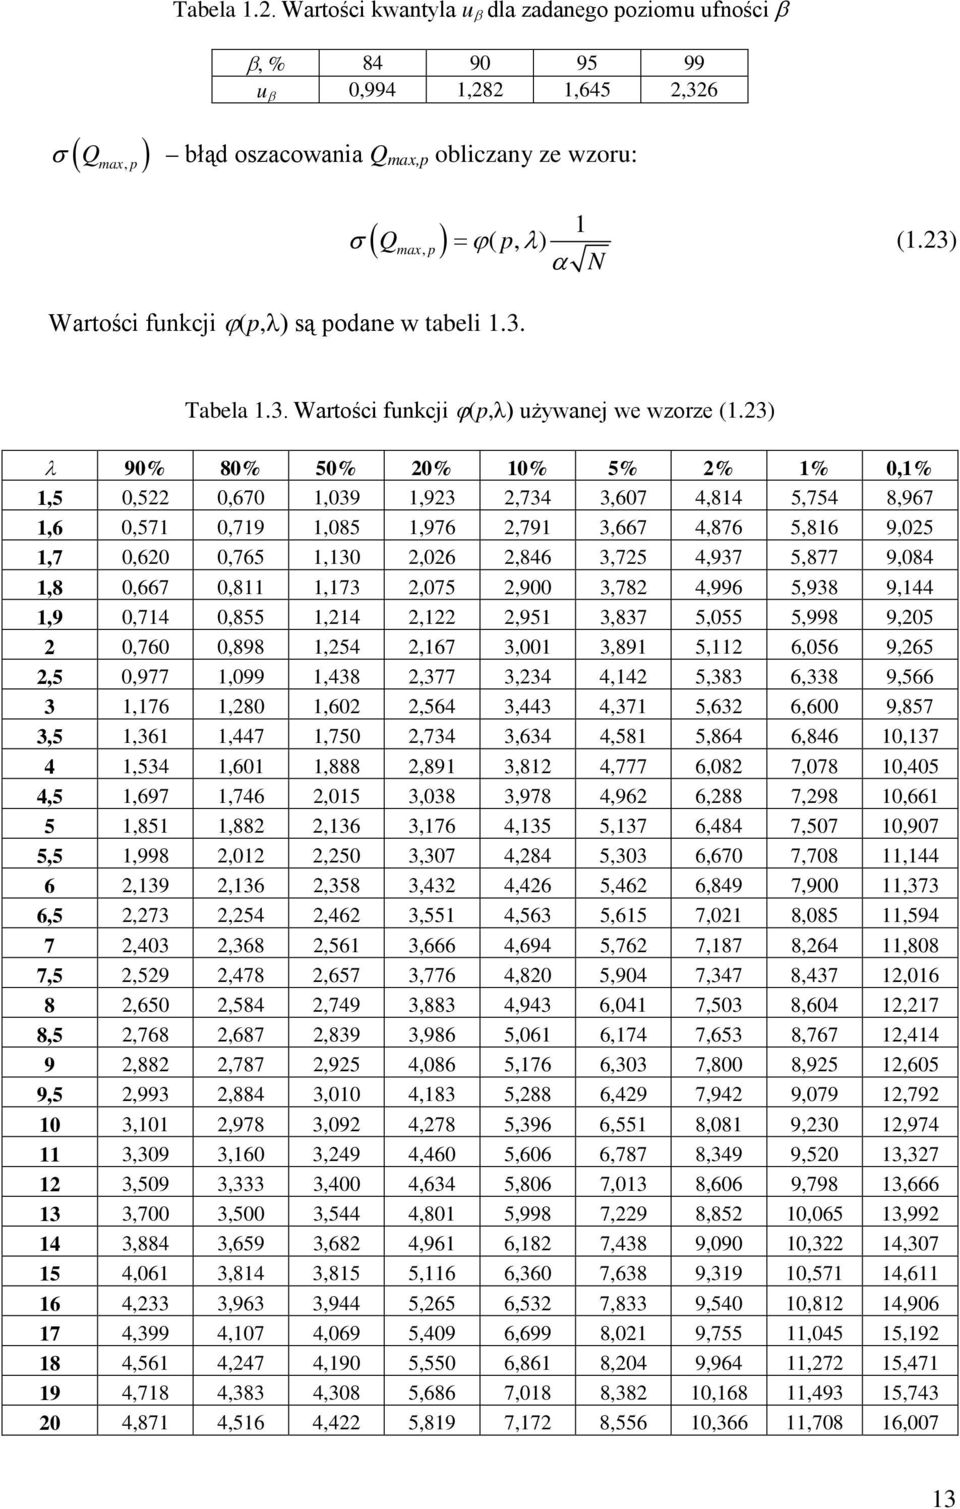 23) α N Tabela 1.3. Wartości funkcji ϕ(p,λ) używanej we wzorze (1.